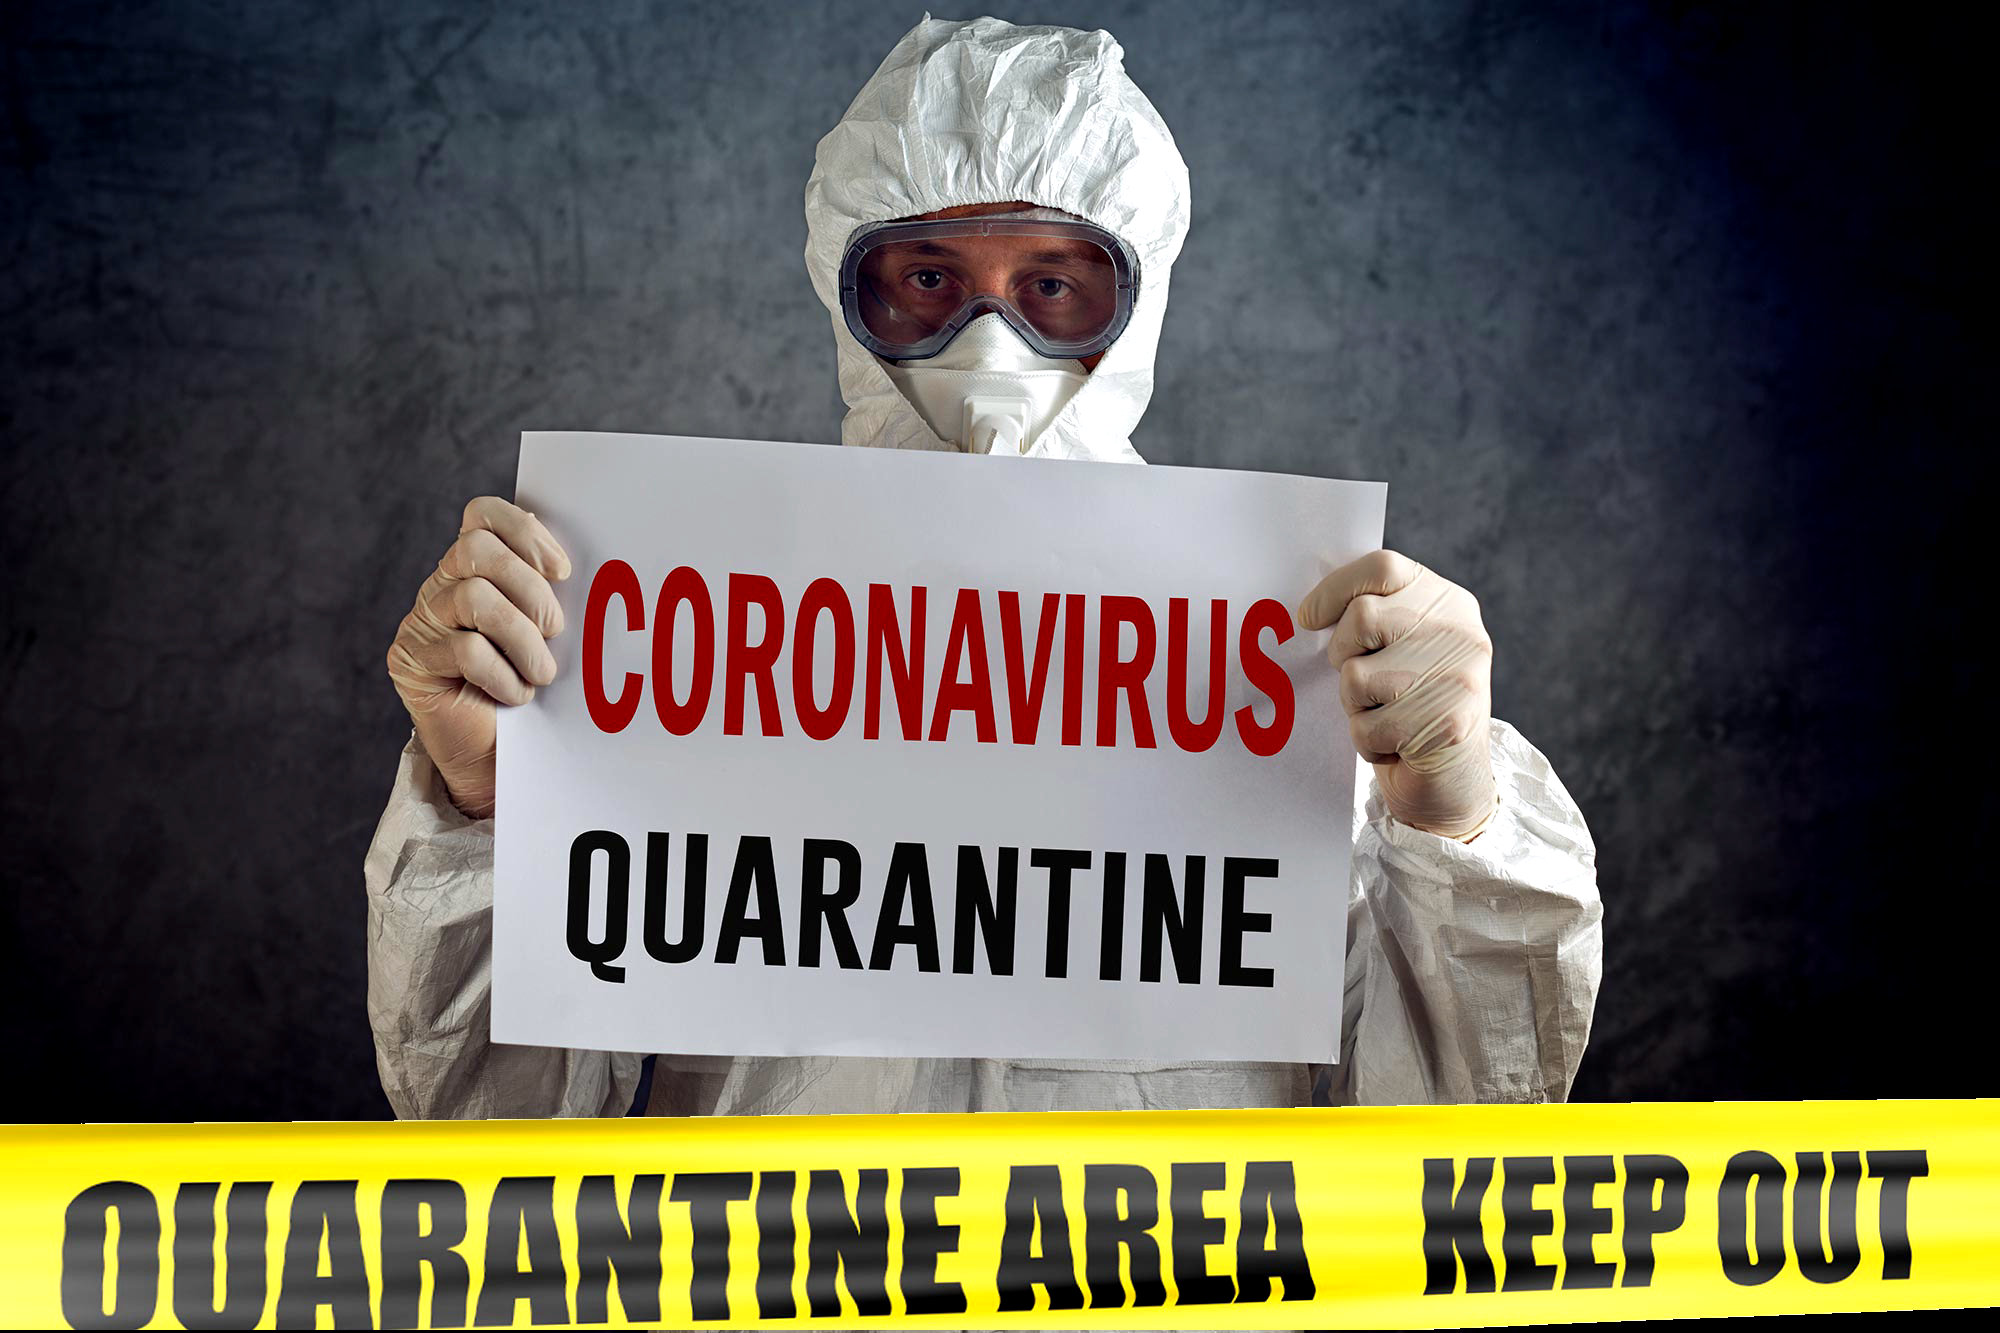 На данный момент, карантин является единственным эффективным способом в борьбе с распространением коронавируса